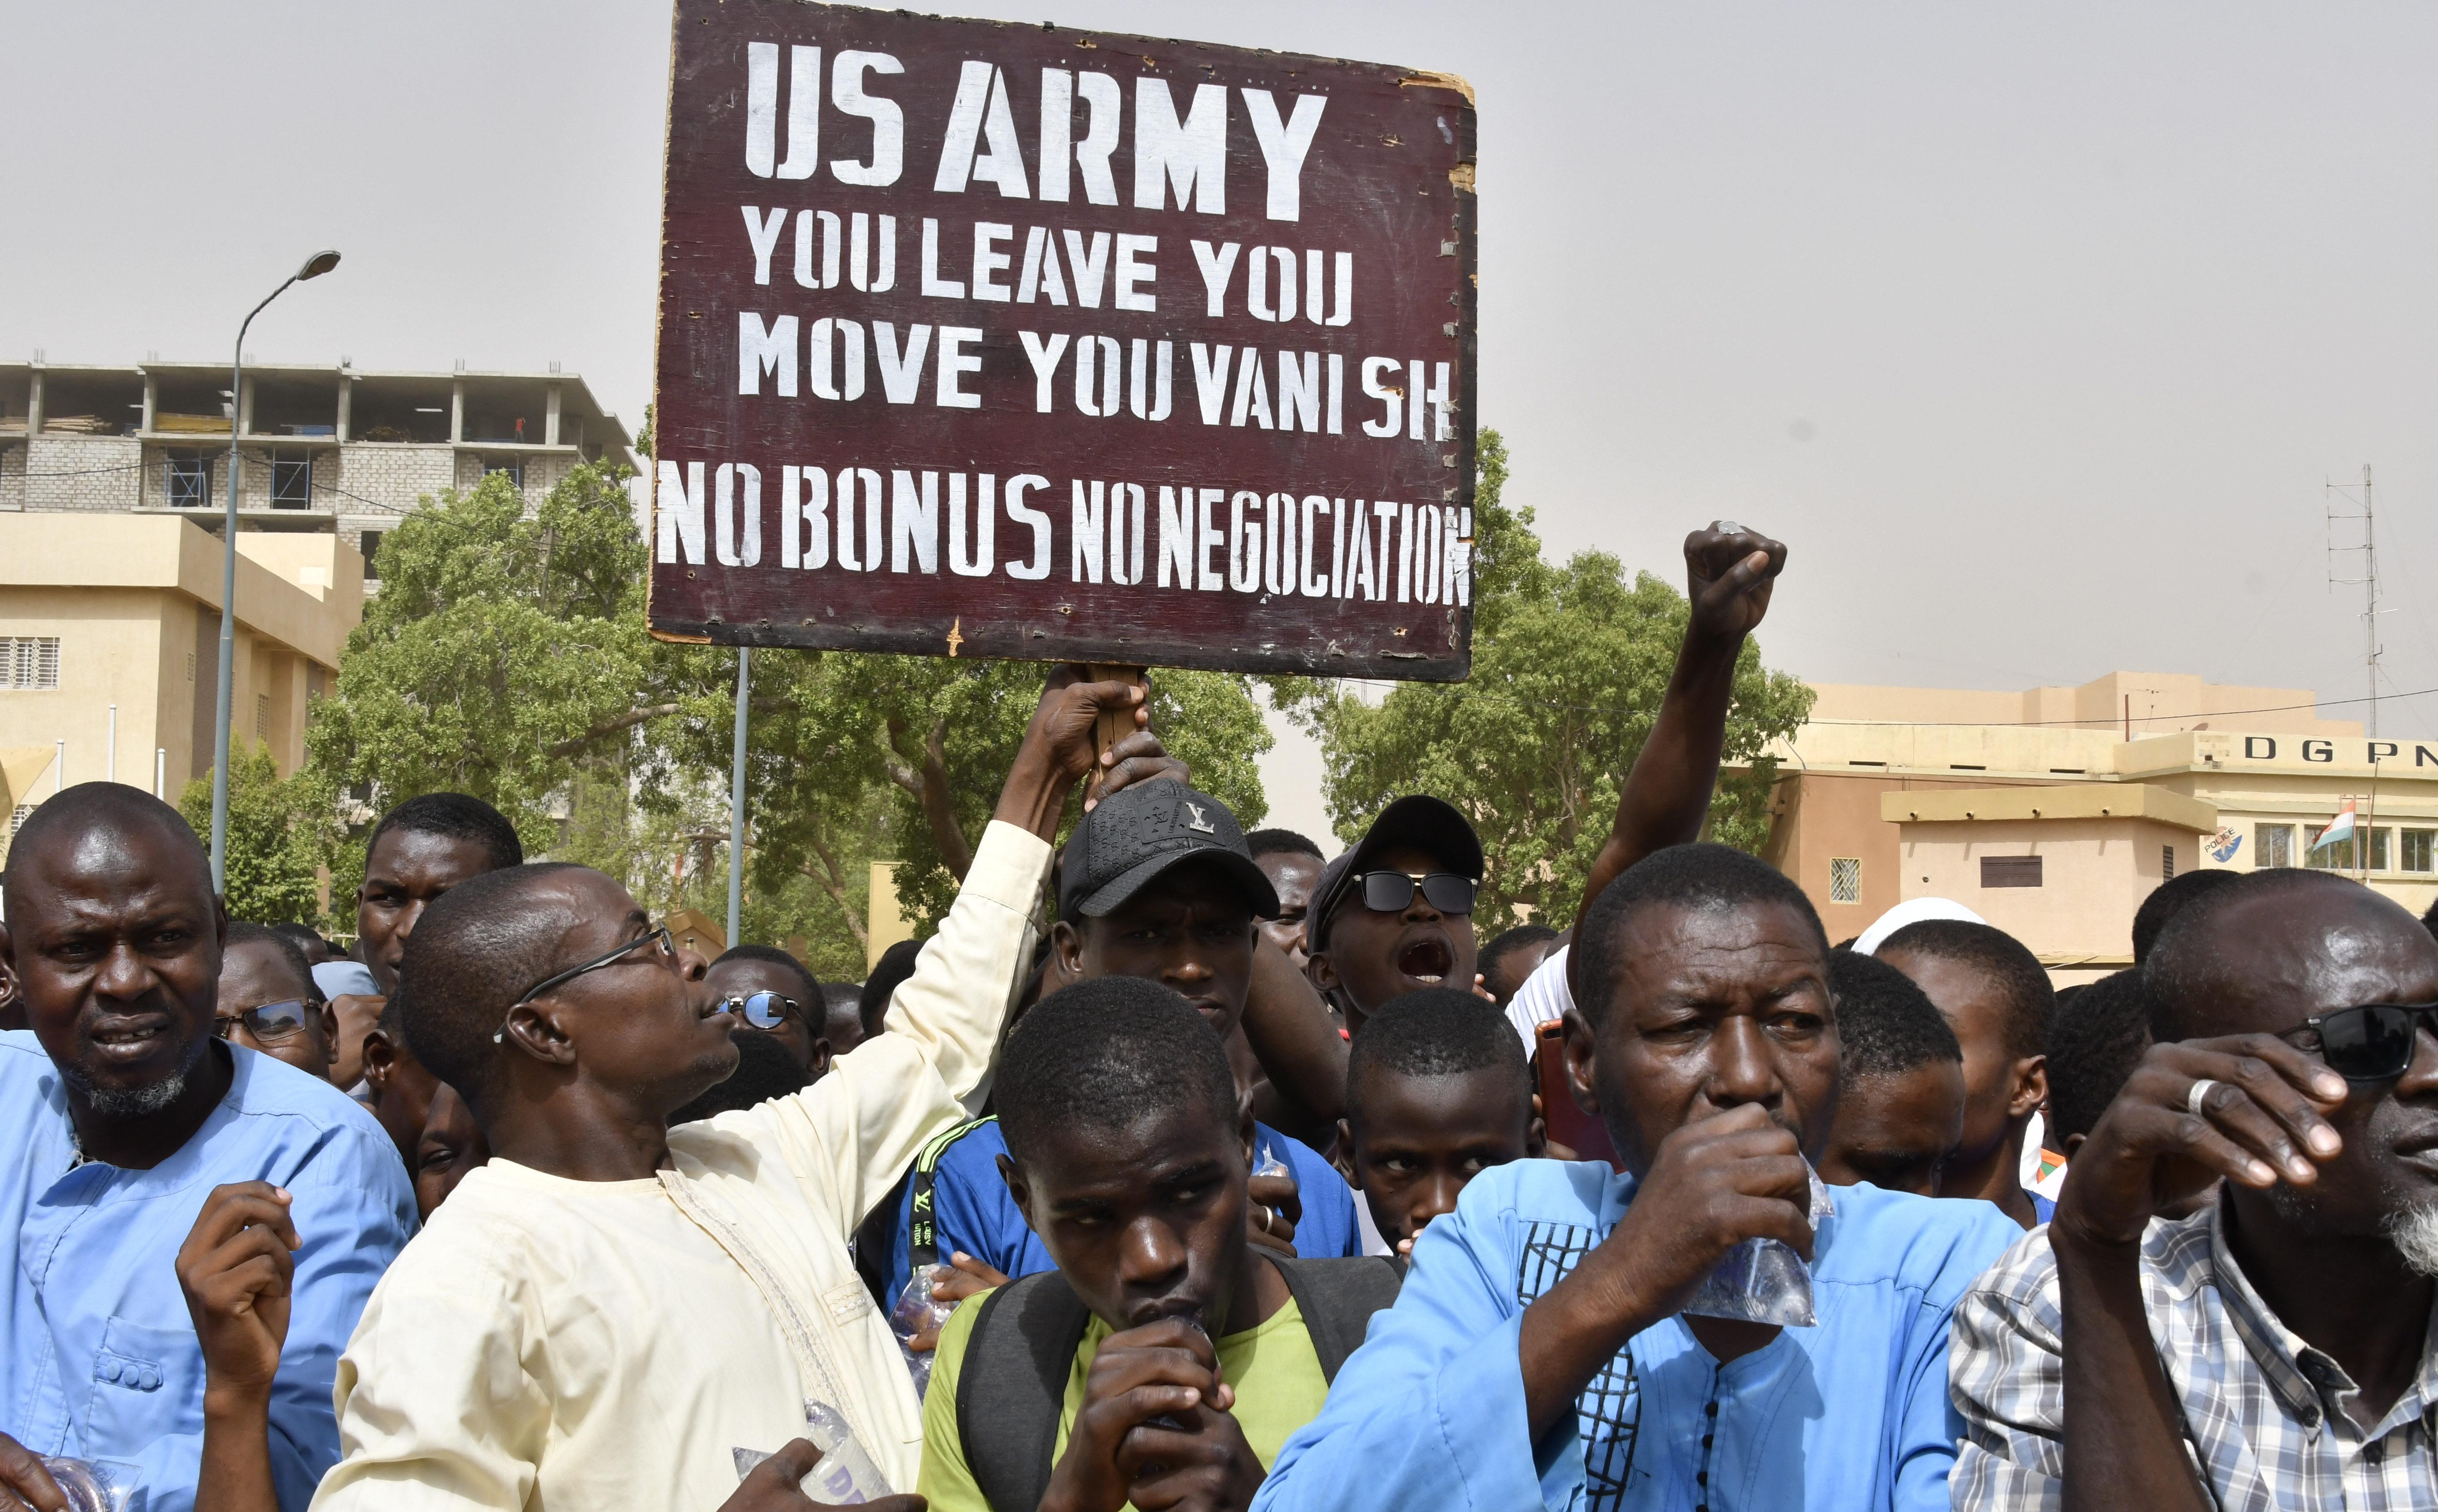 Władze w Nigrze wypowiedziały umowę z USA. To cios również w Unię Europejską